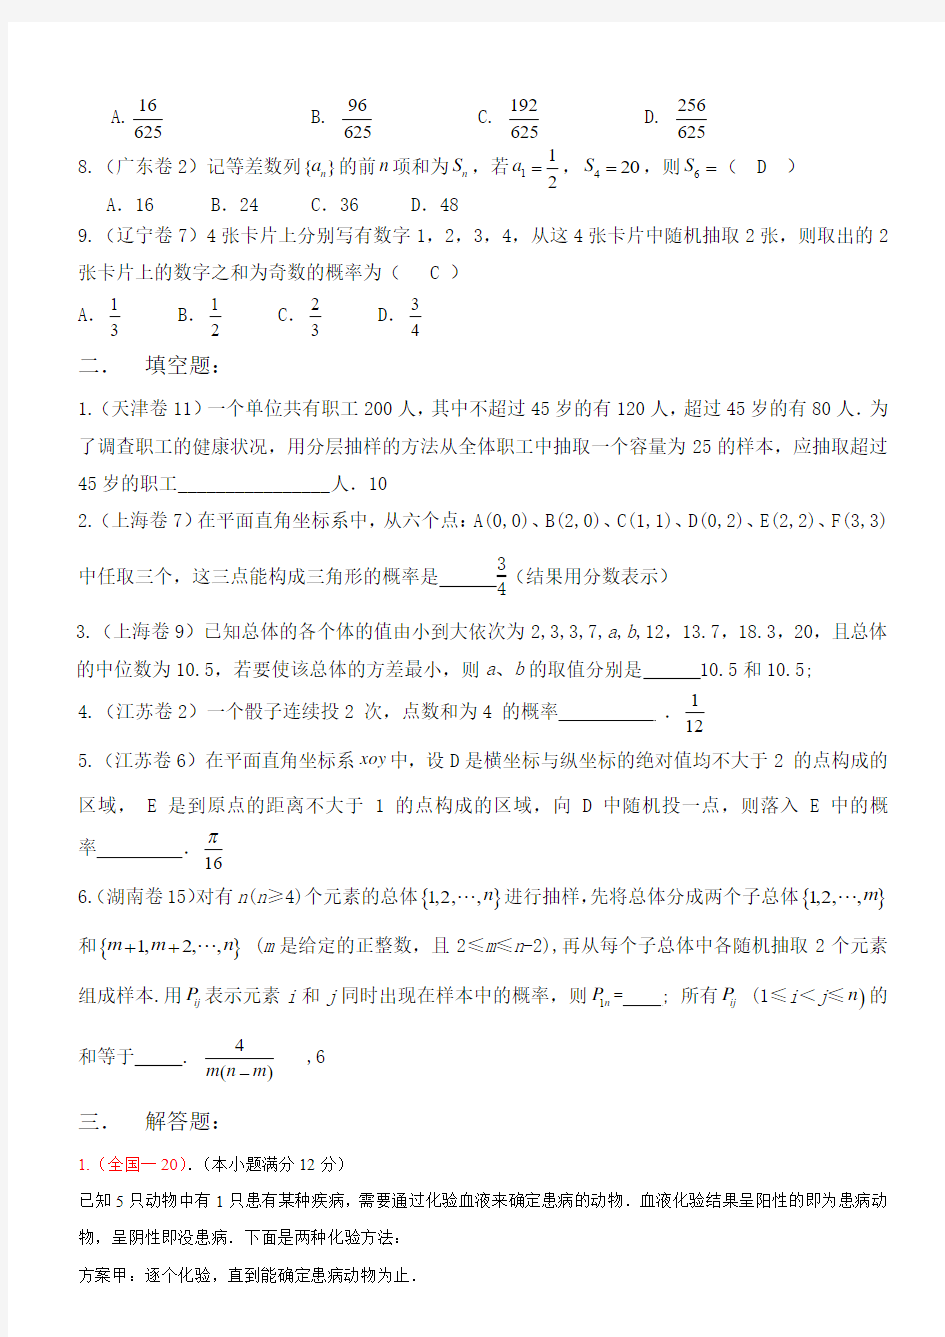 2008年高考数学试题汇编 - 湖南省汉寿县第一中学欢迎您!